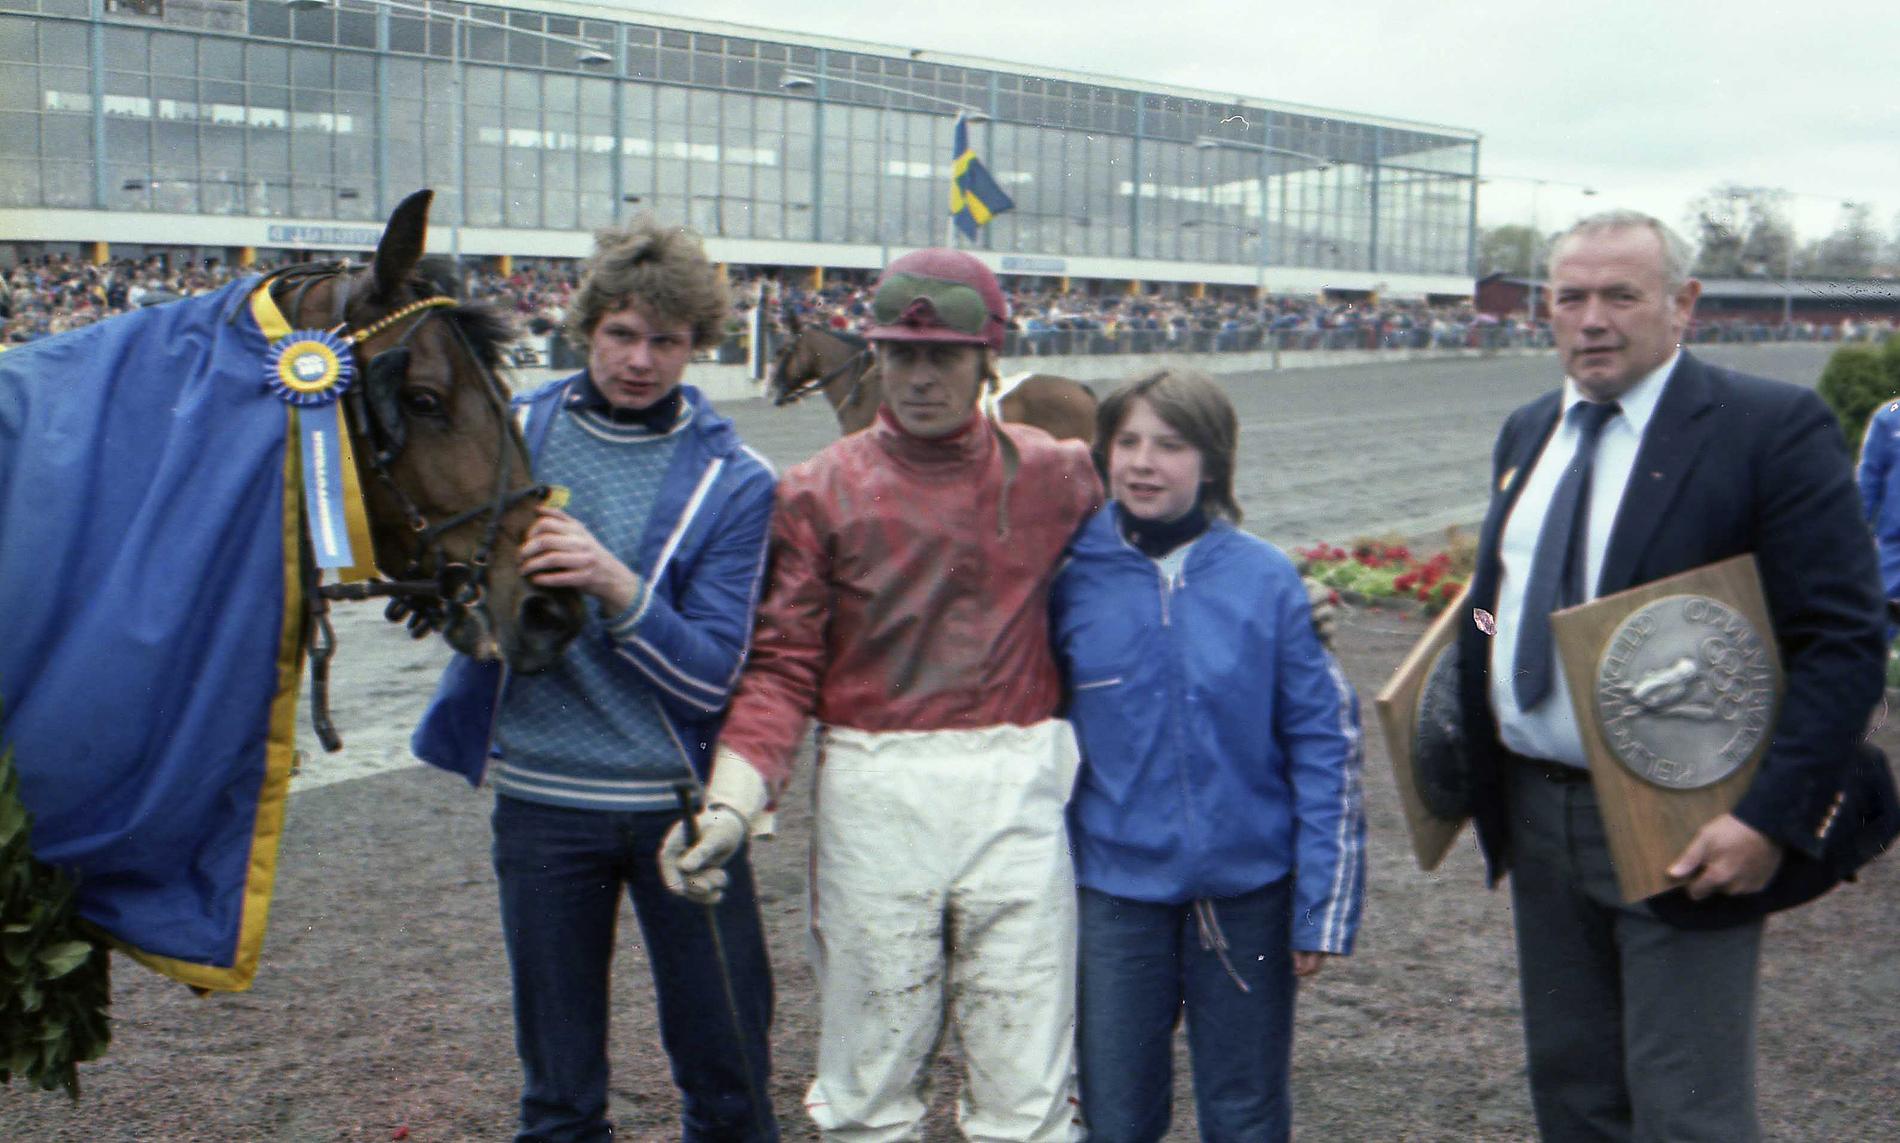 Jana Bloc och Ove R Andersson segrade i Olympiatravet 1982.
Med i vinnarcirkeln, Sveriges store boxningshjälte Ingemar Johansson.